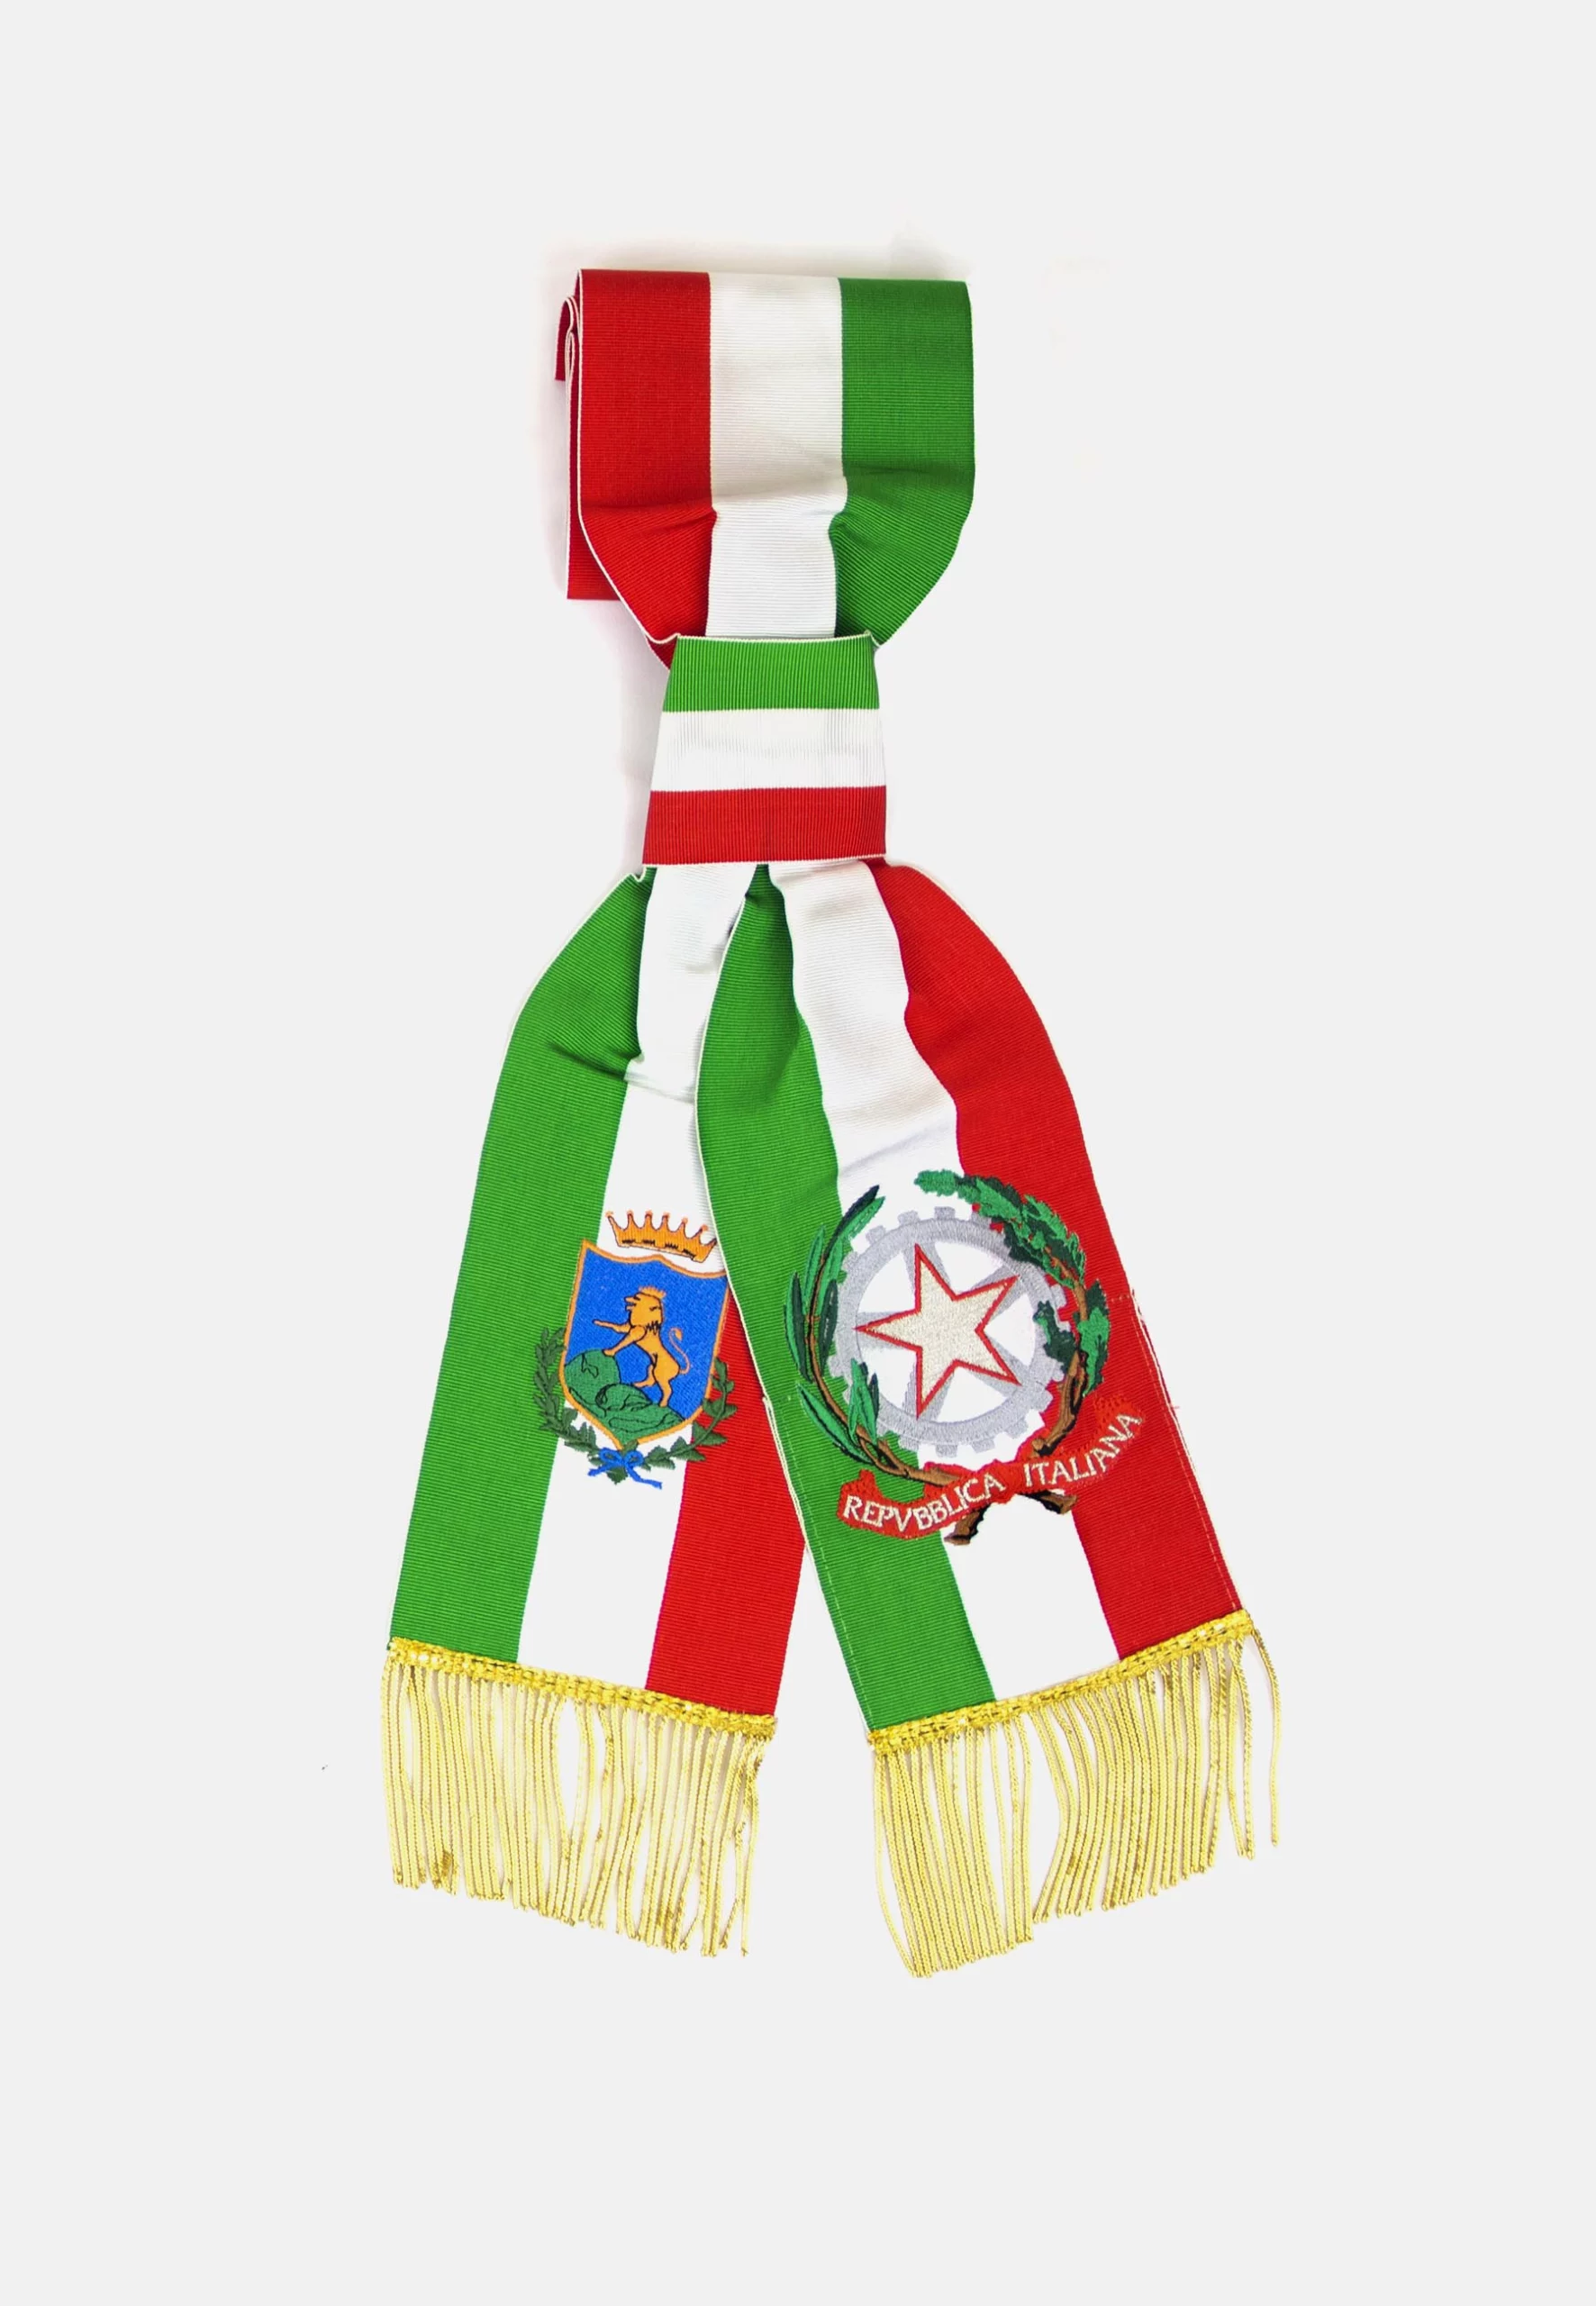 Uso improprio della fascia tricolore, Fratelli d'Italia Assisi contro il  sindaco - Assisi News